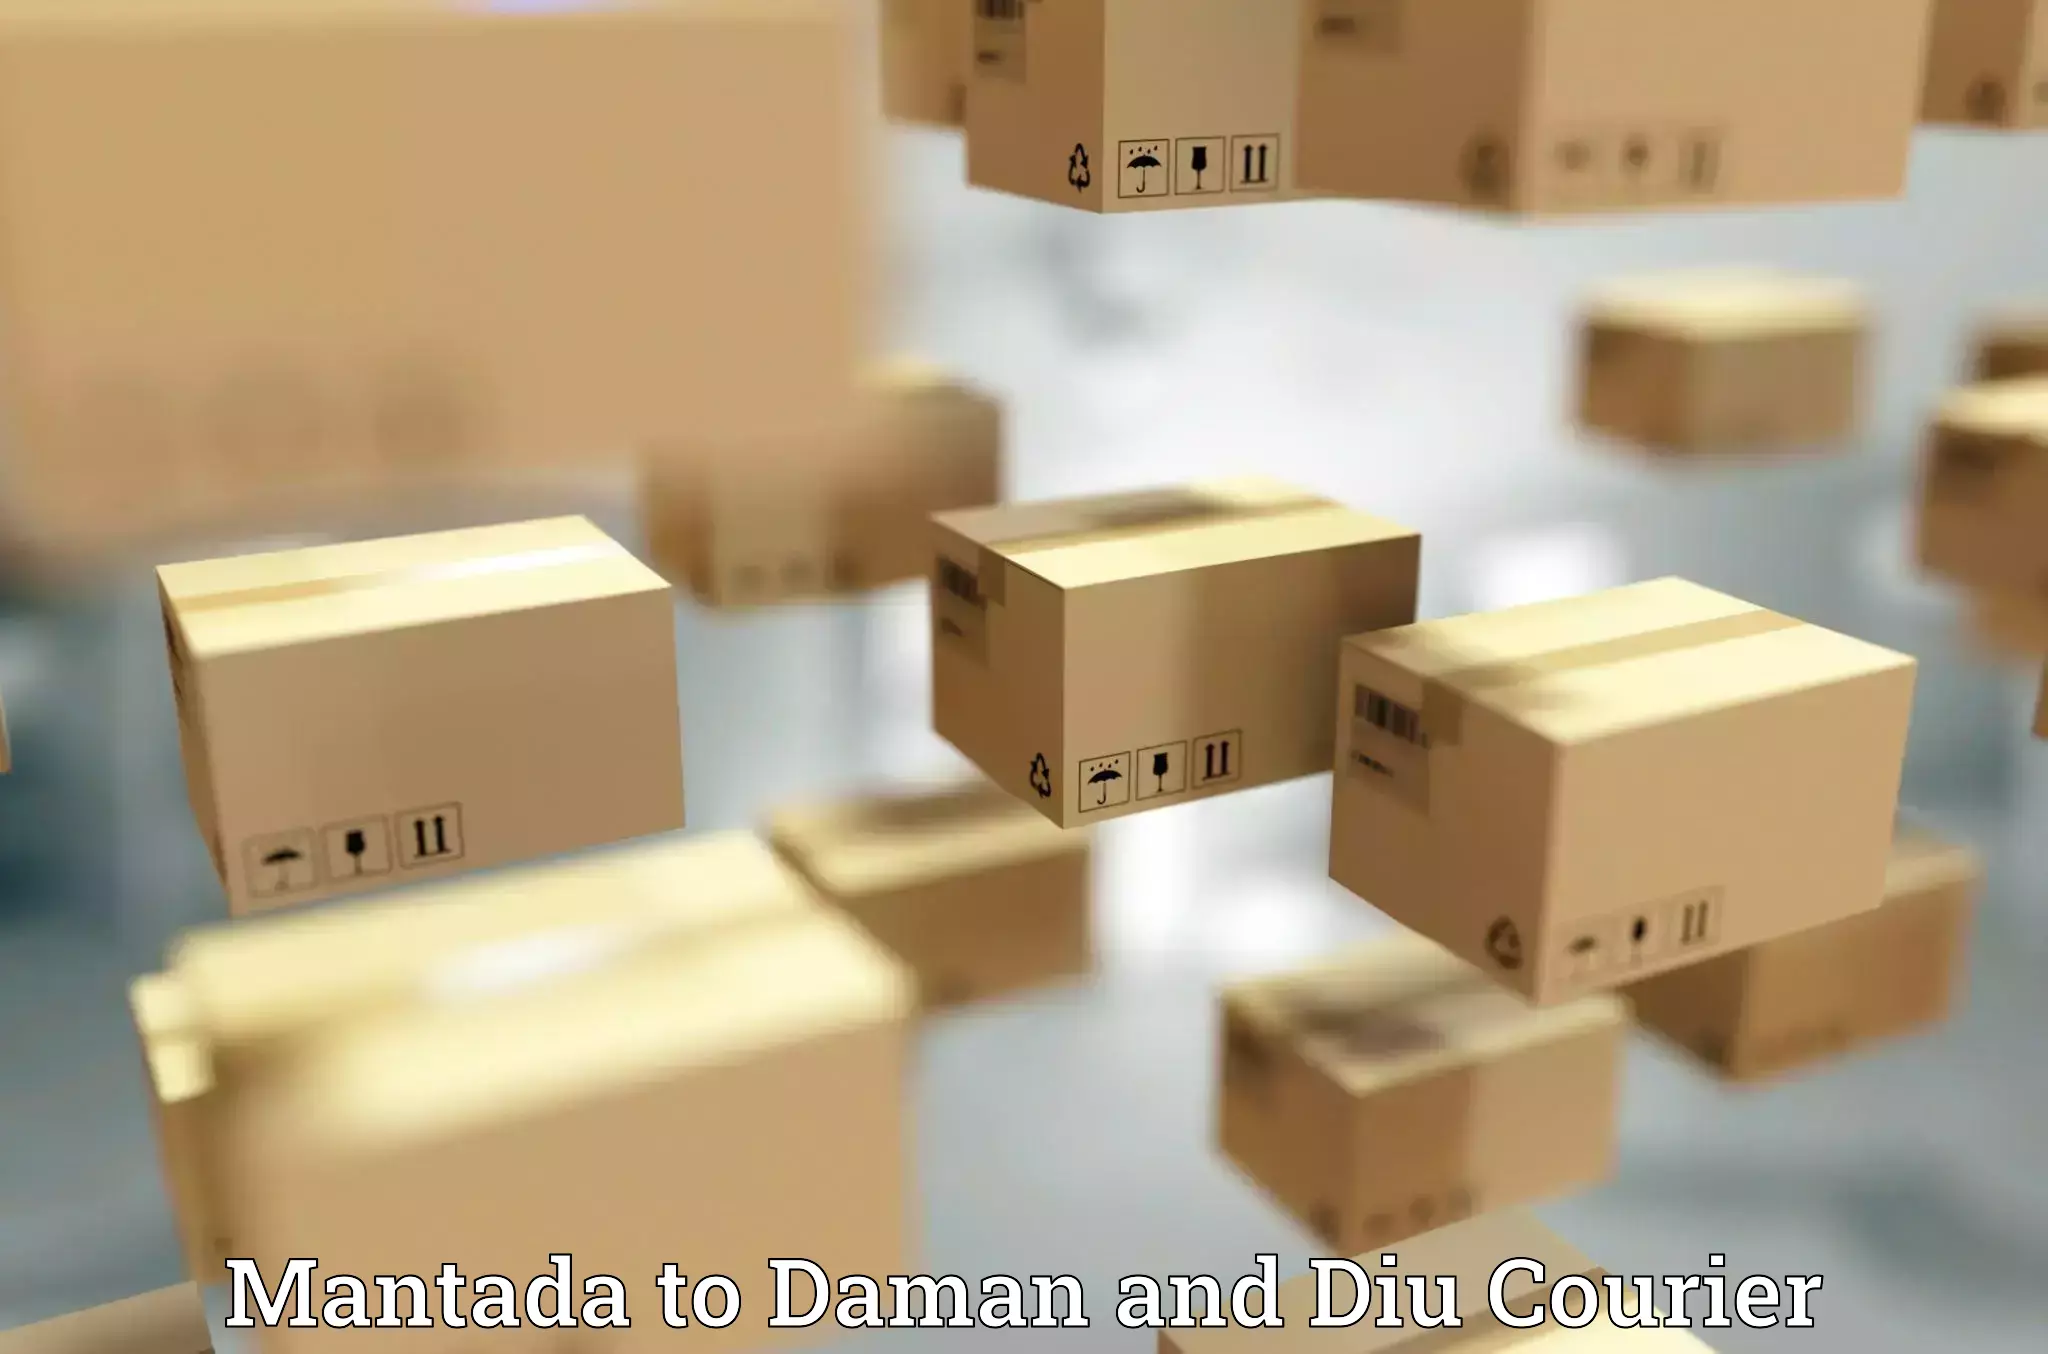 Digital courier platforms Mantada to Daman